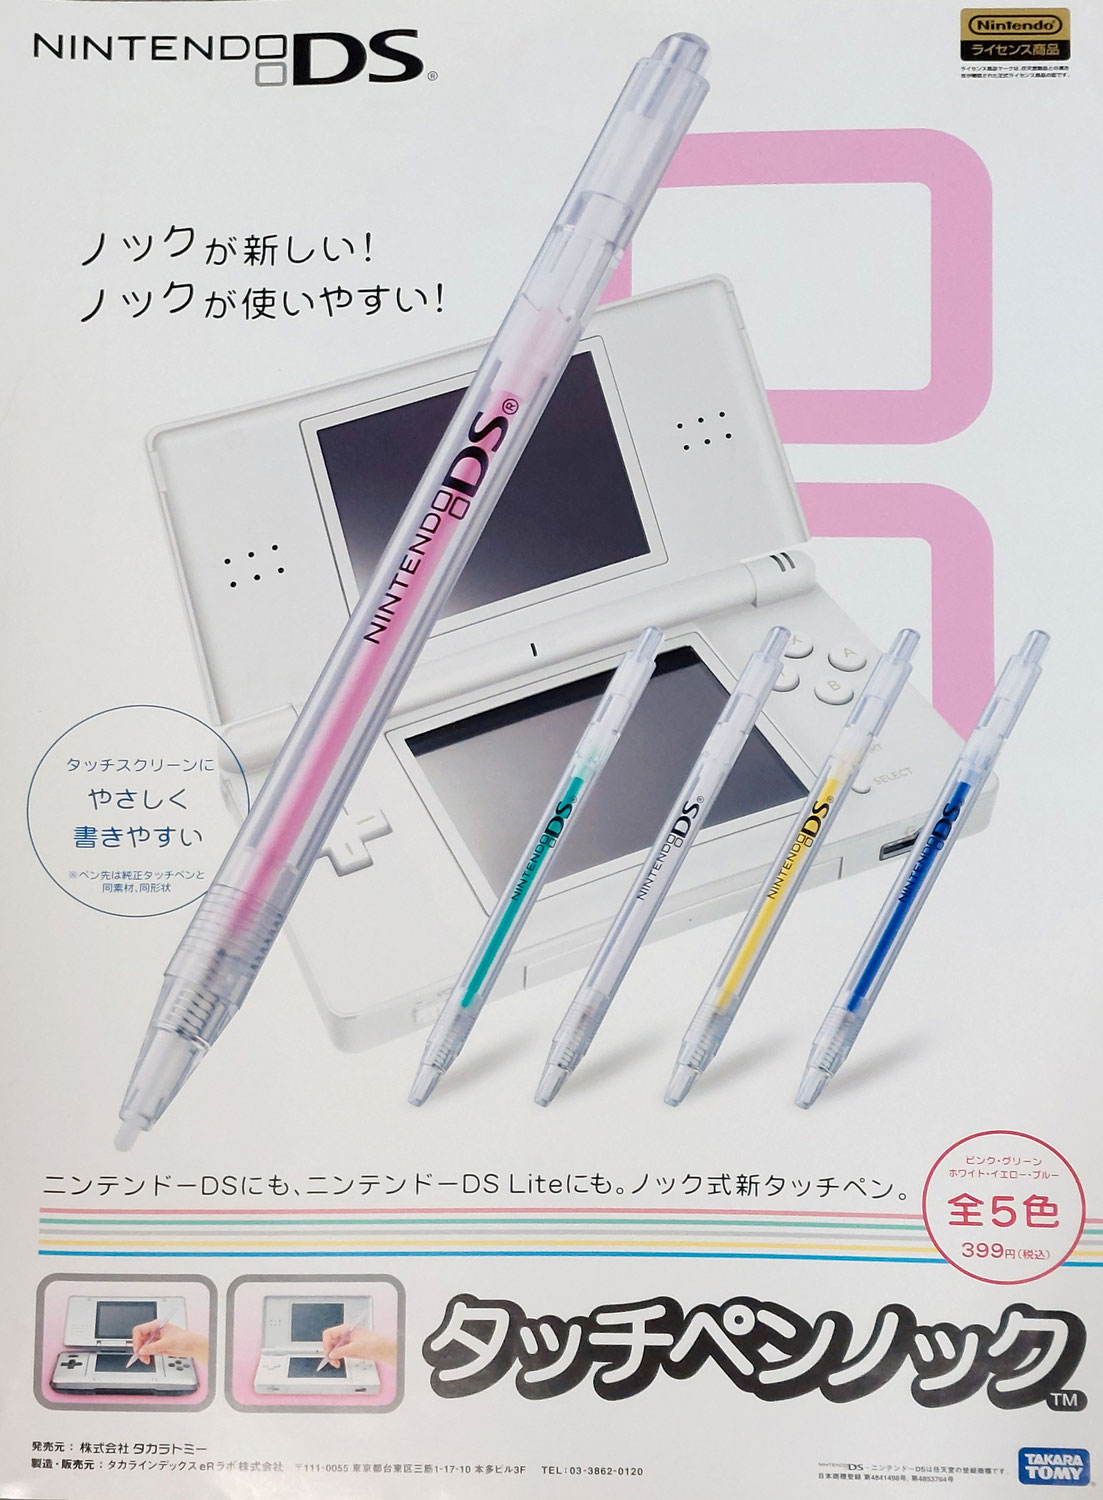 Nintendo DS、ノック式新タッチペンの新.発売に向けて、ポスター用の撮影を担当しました。